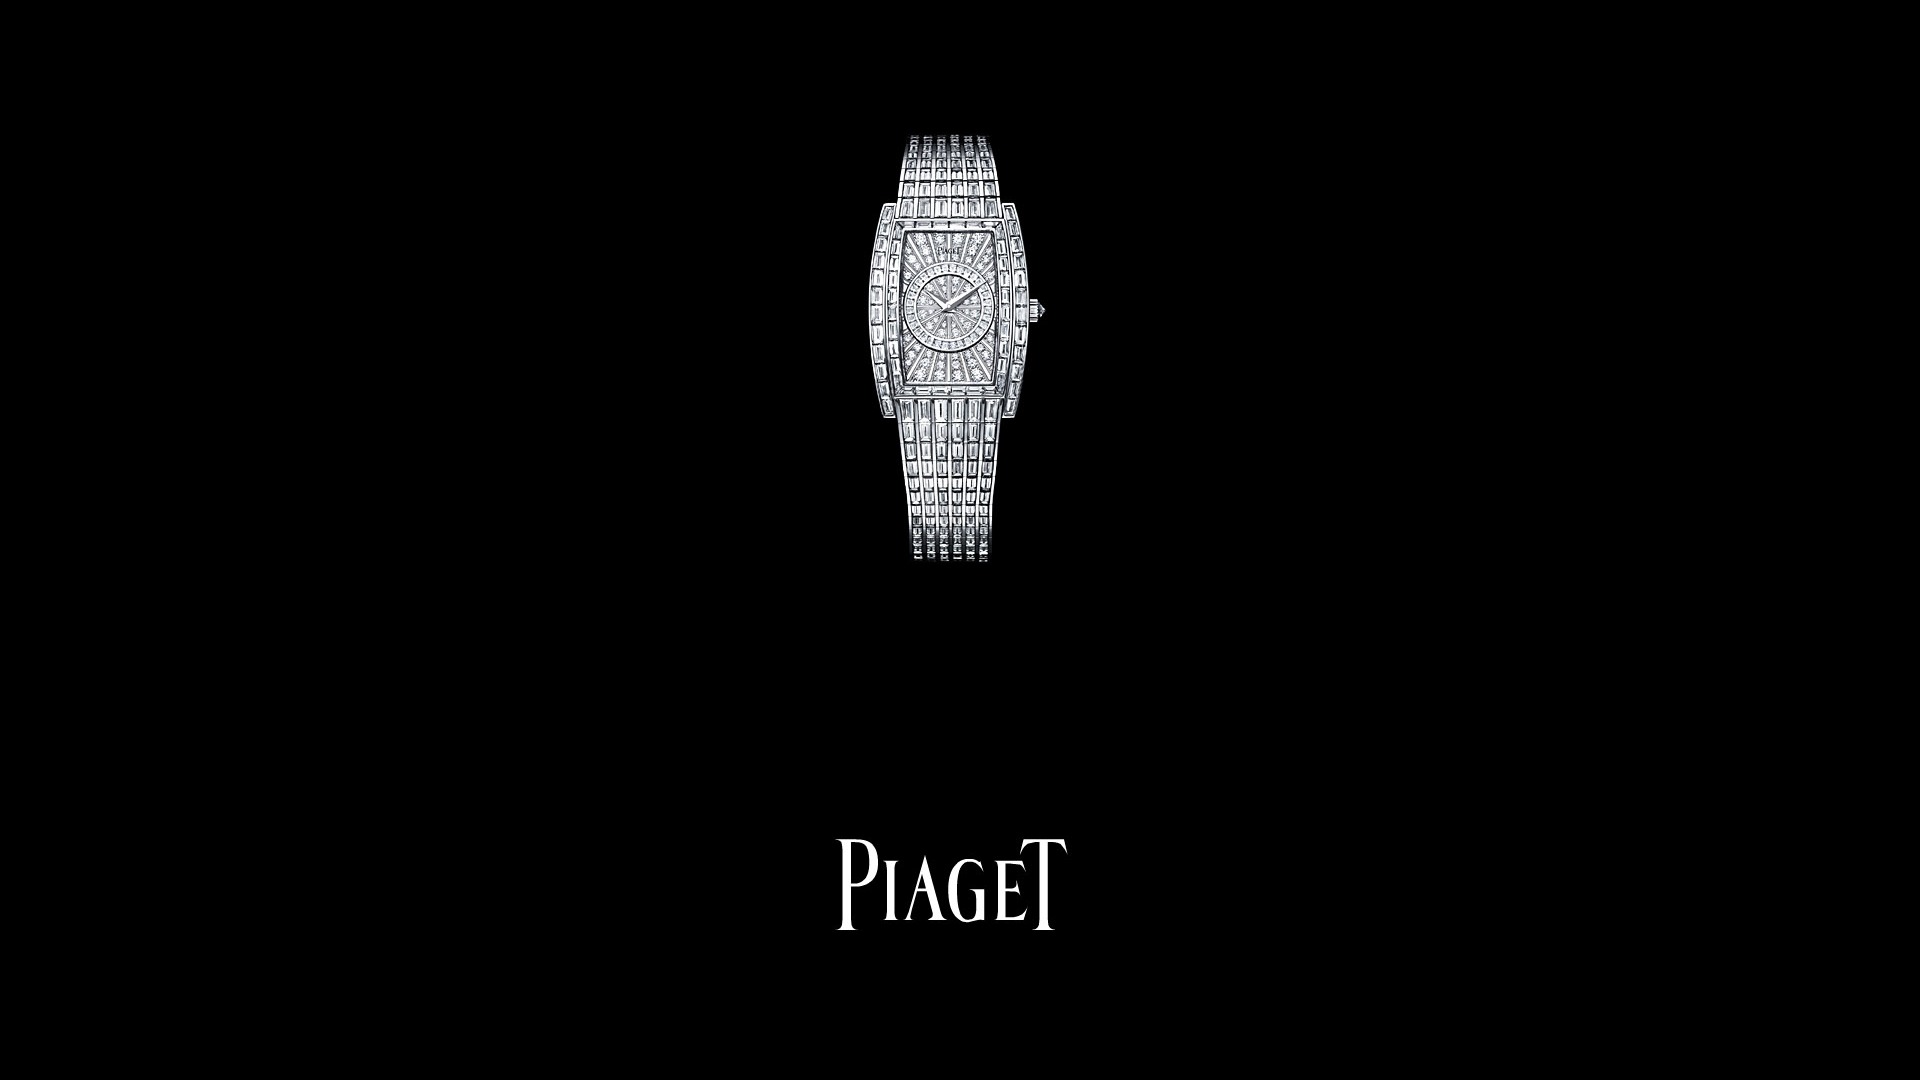 Piaget Diamante fondos de escritorio de reloj (2) #10 - 1920x1080